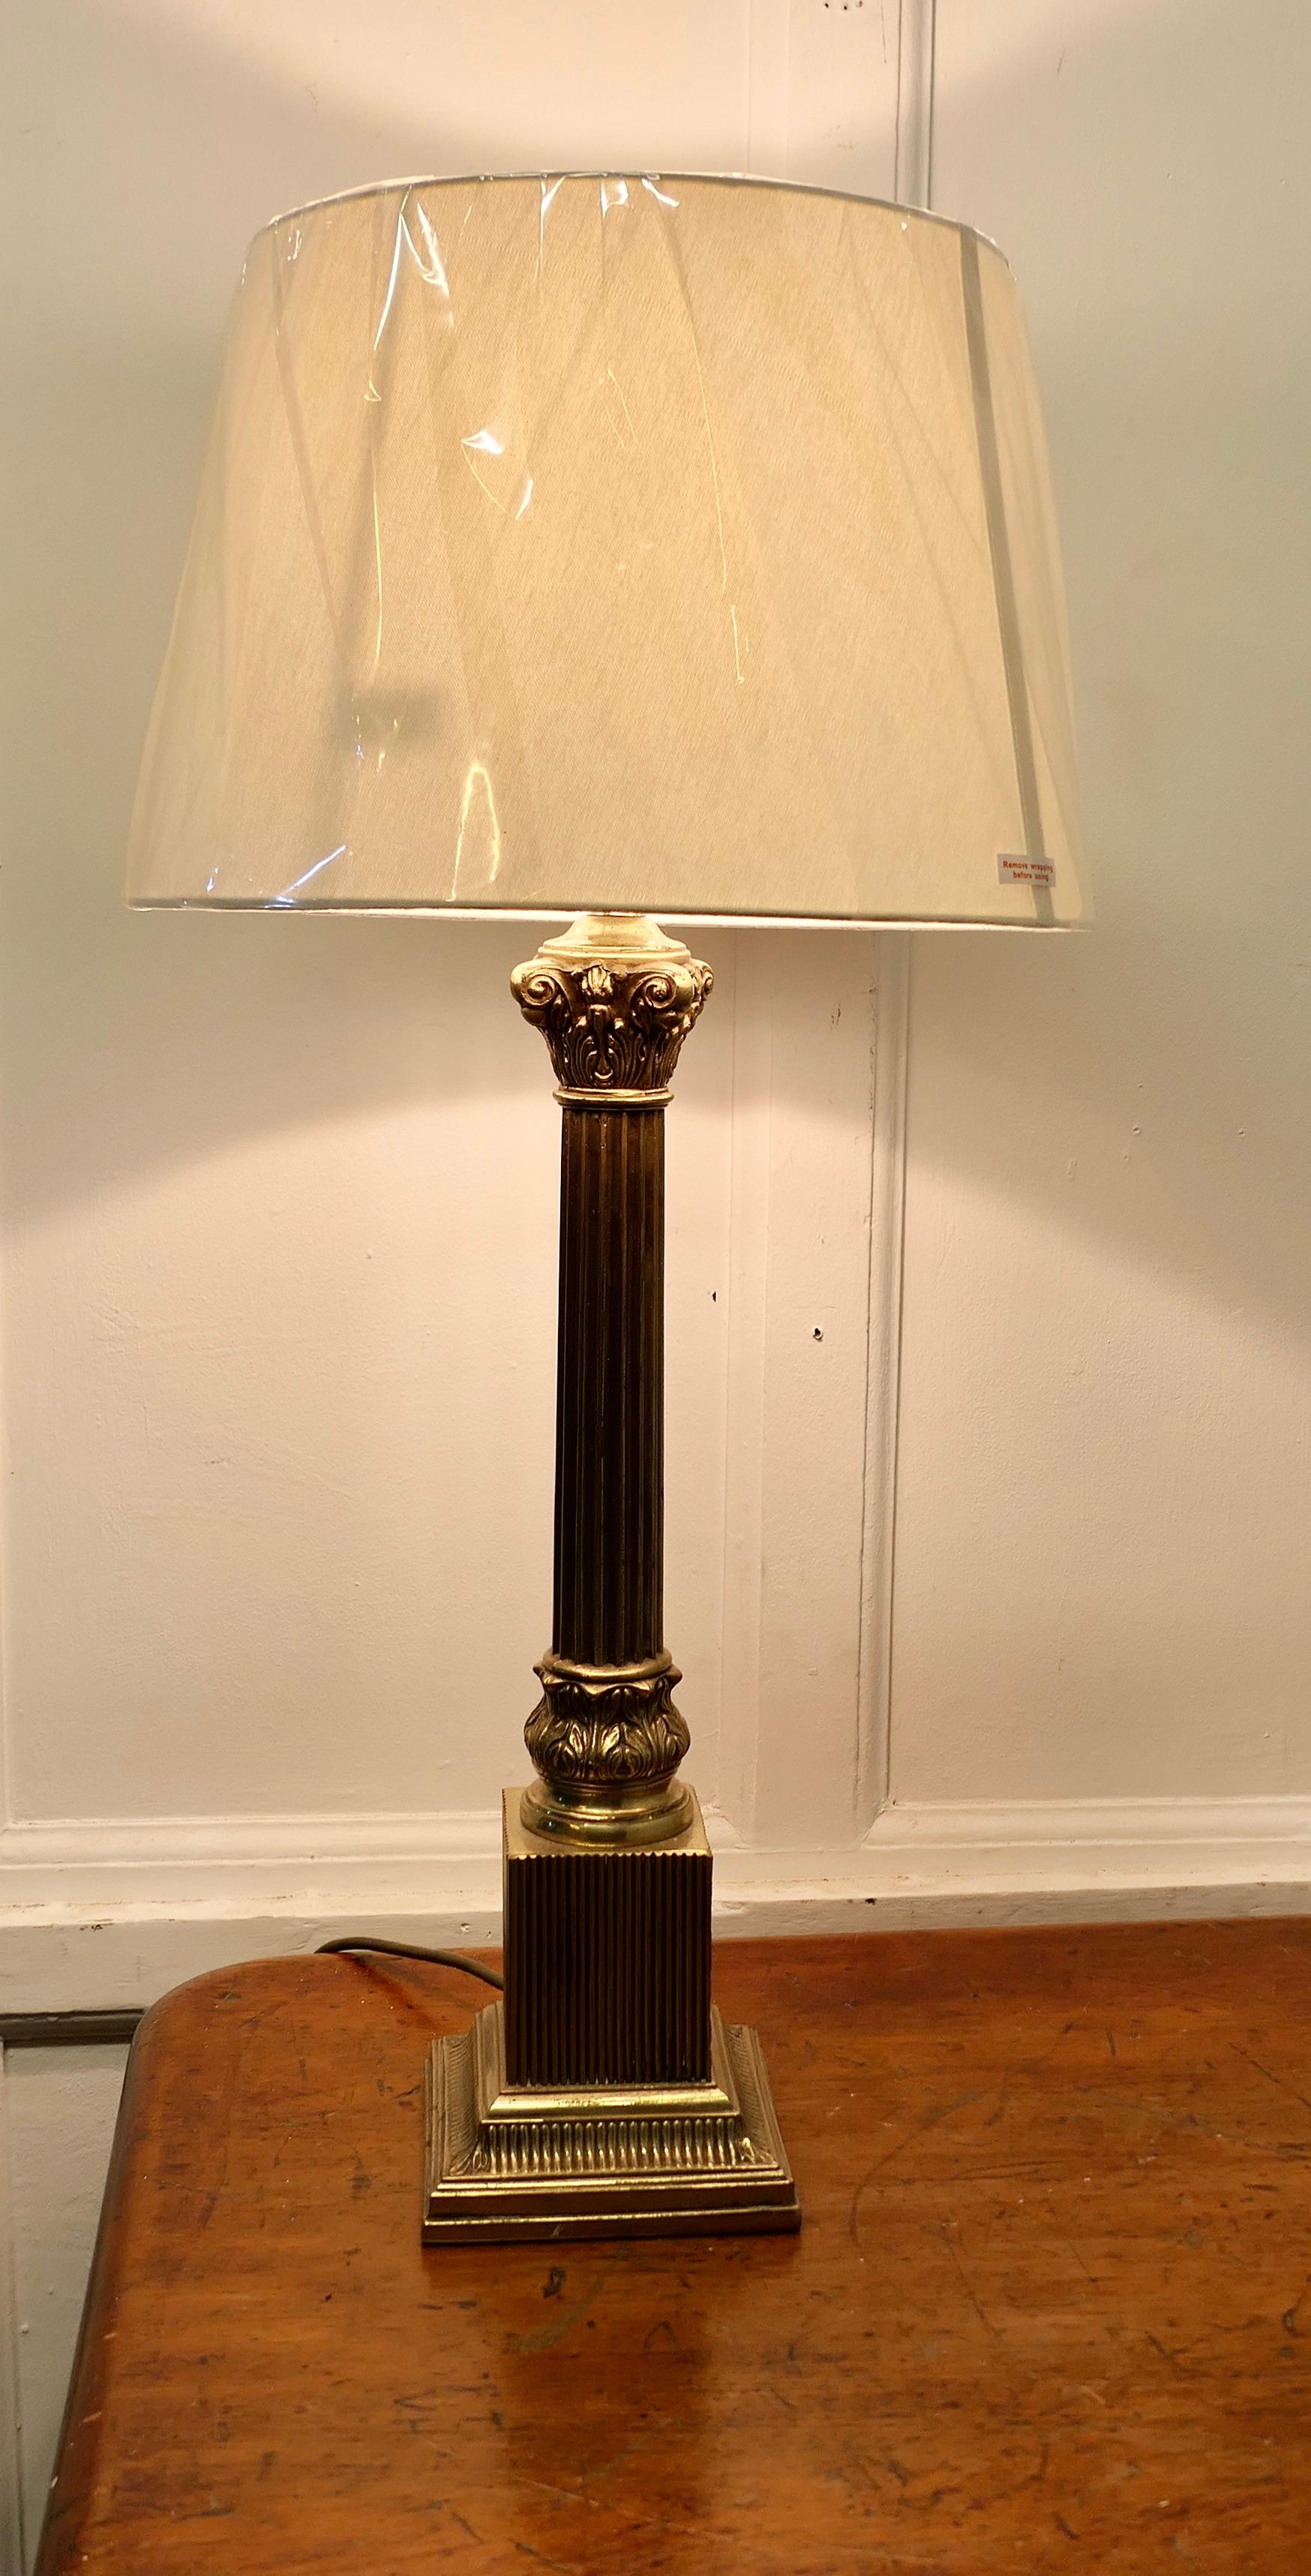 Lampe de table à colonne corinthienne en laiton  

Cette lampe est très attrayante. Elle possède une lourde colonne de style corinthien posée sur une base rectangulaire étagée. Elle est livrée avec un abat-jour en lin de couleur neutre, qui peut